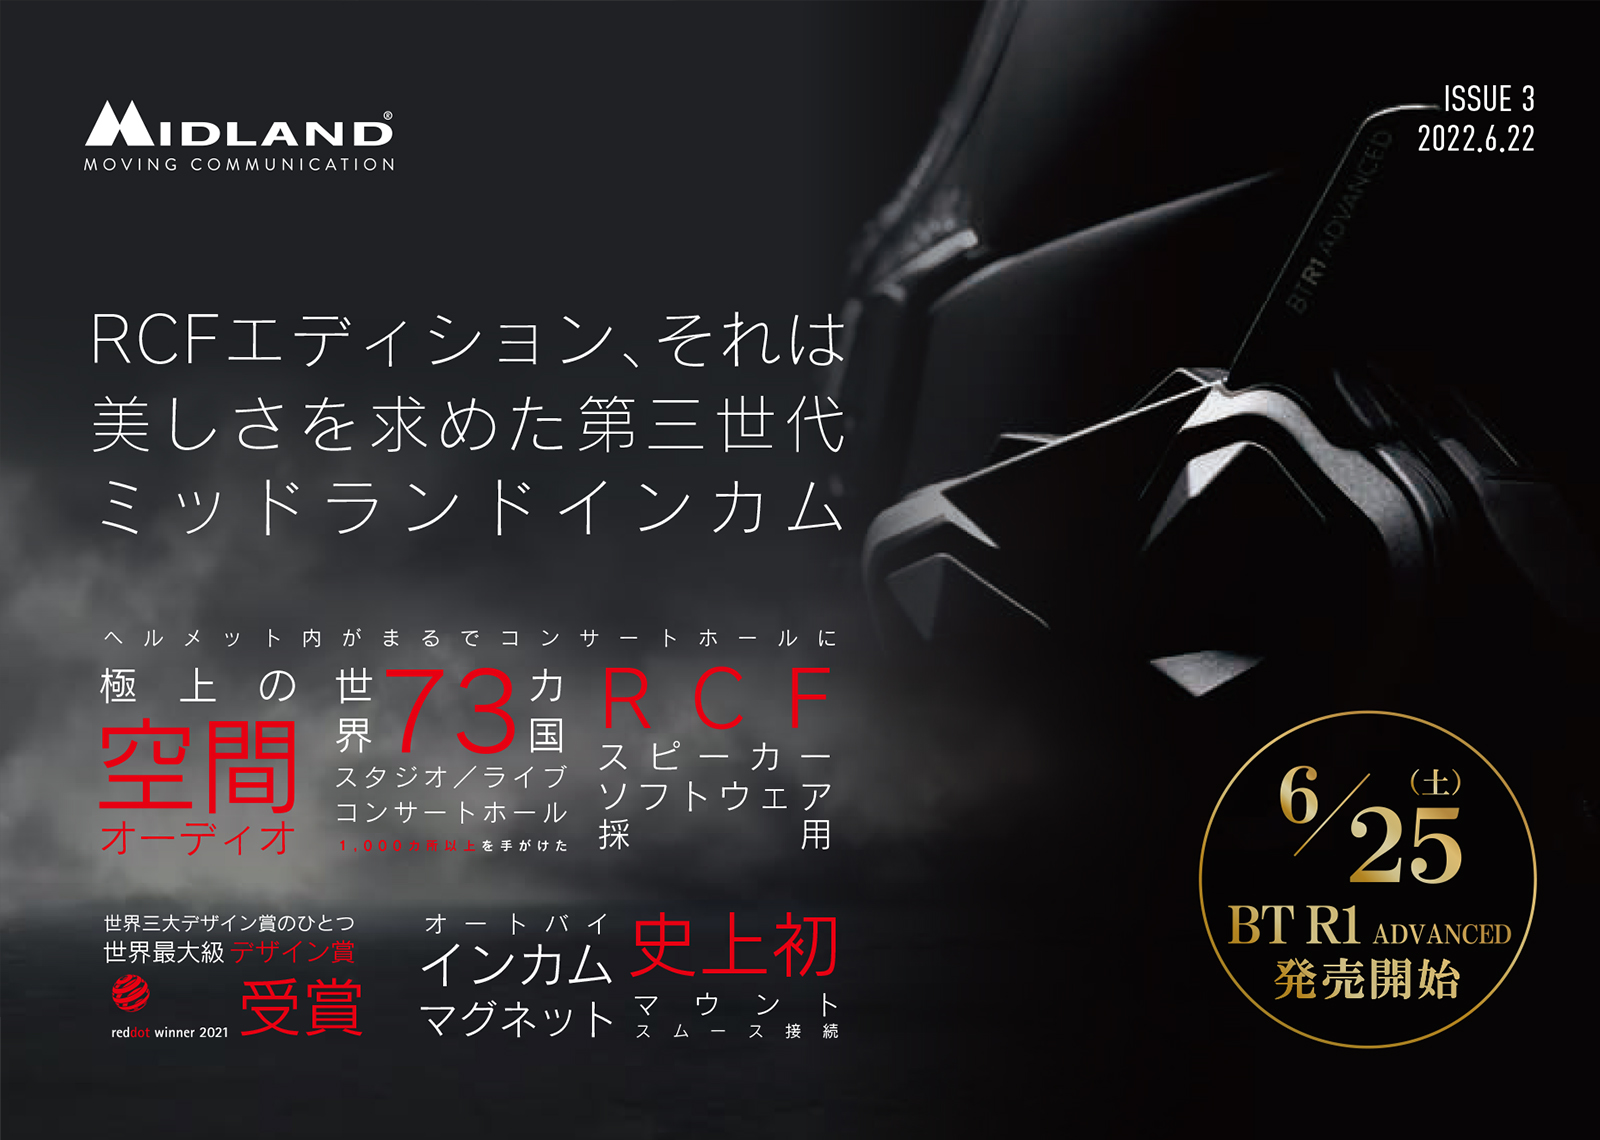 2022年6月25日【MIDLAND 新モデル BT R1 ADVANCED 新発売】 | MIDLAND 